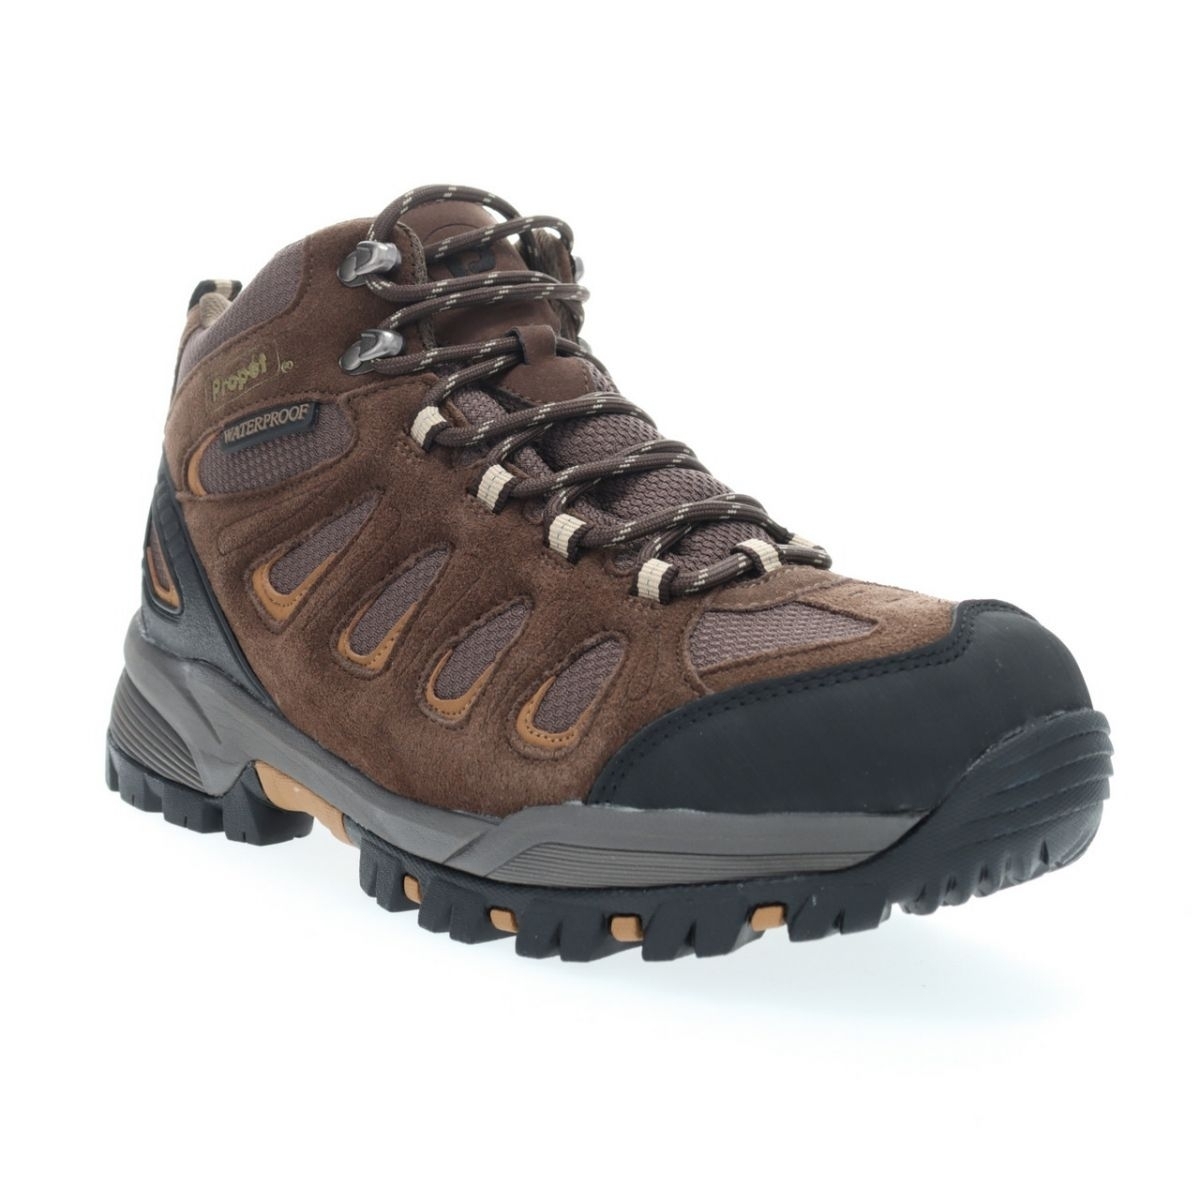 Propet Men's Ridge Walker Hiking Boot Brown - M3599BR 8 XX US Men BROWN - BROWN, 10.5 X-Wide